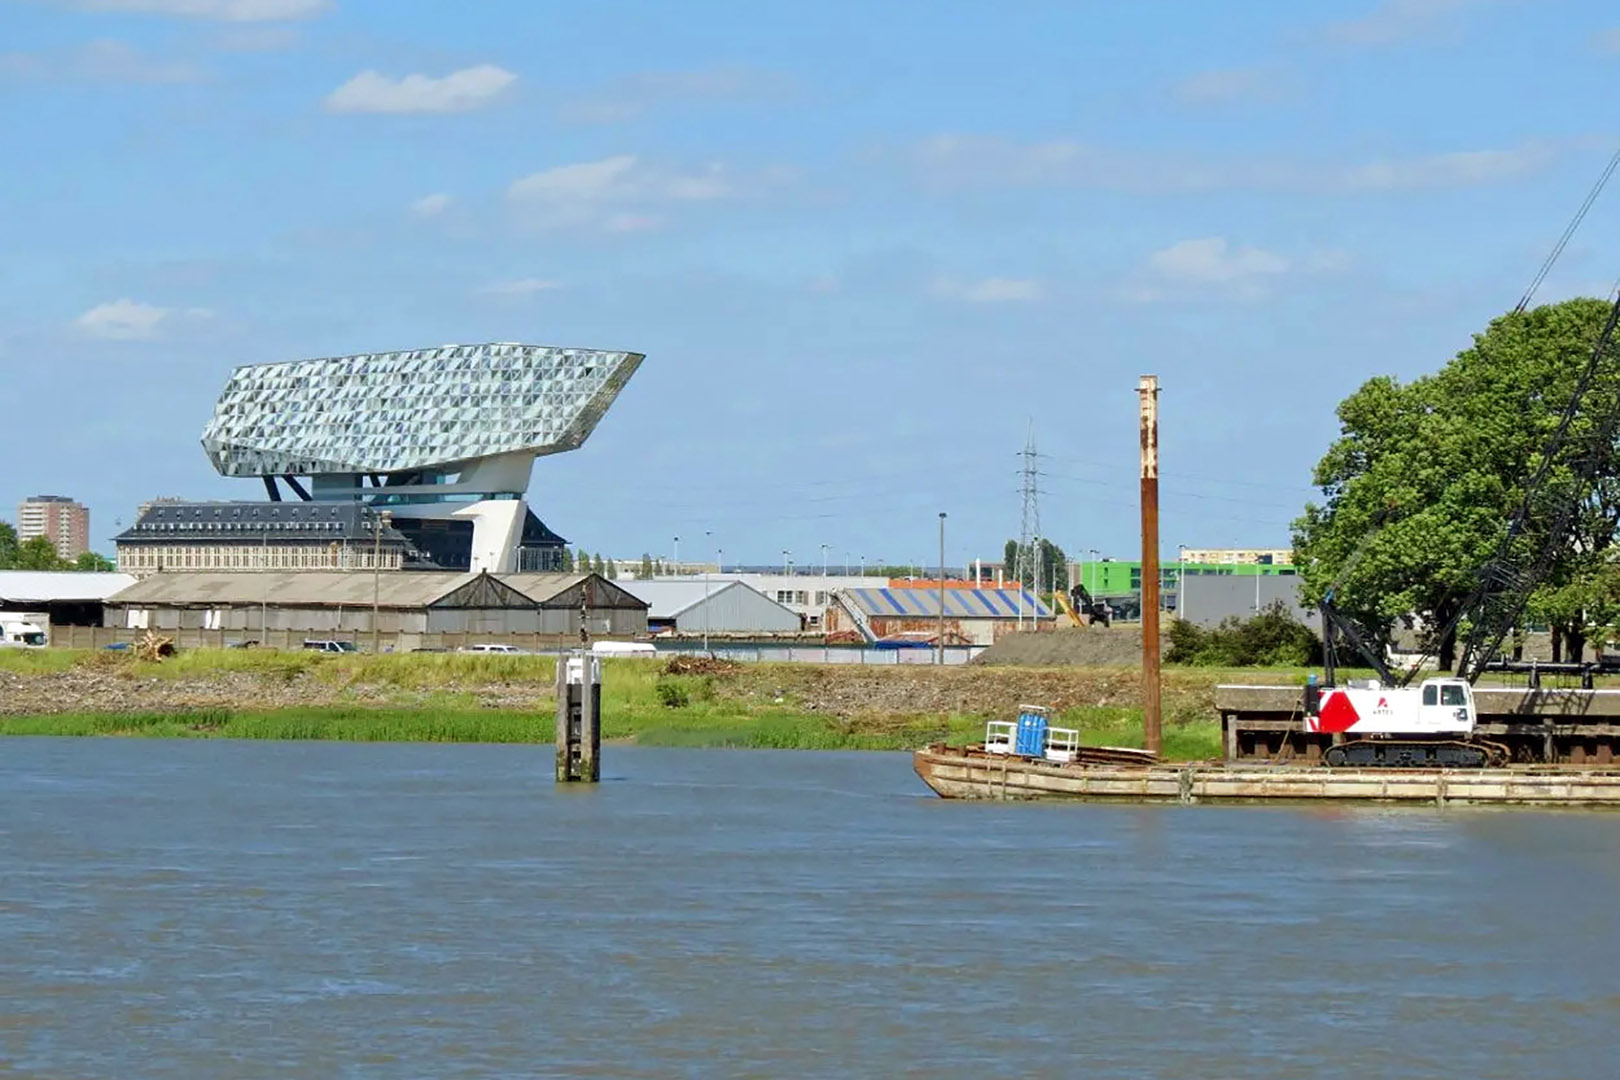 fotoreeks Excursion depuis Temse et Anvers vers Doel, Lillo et le port à conteneurs